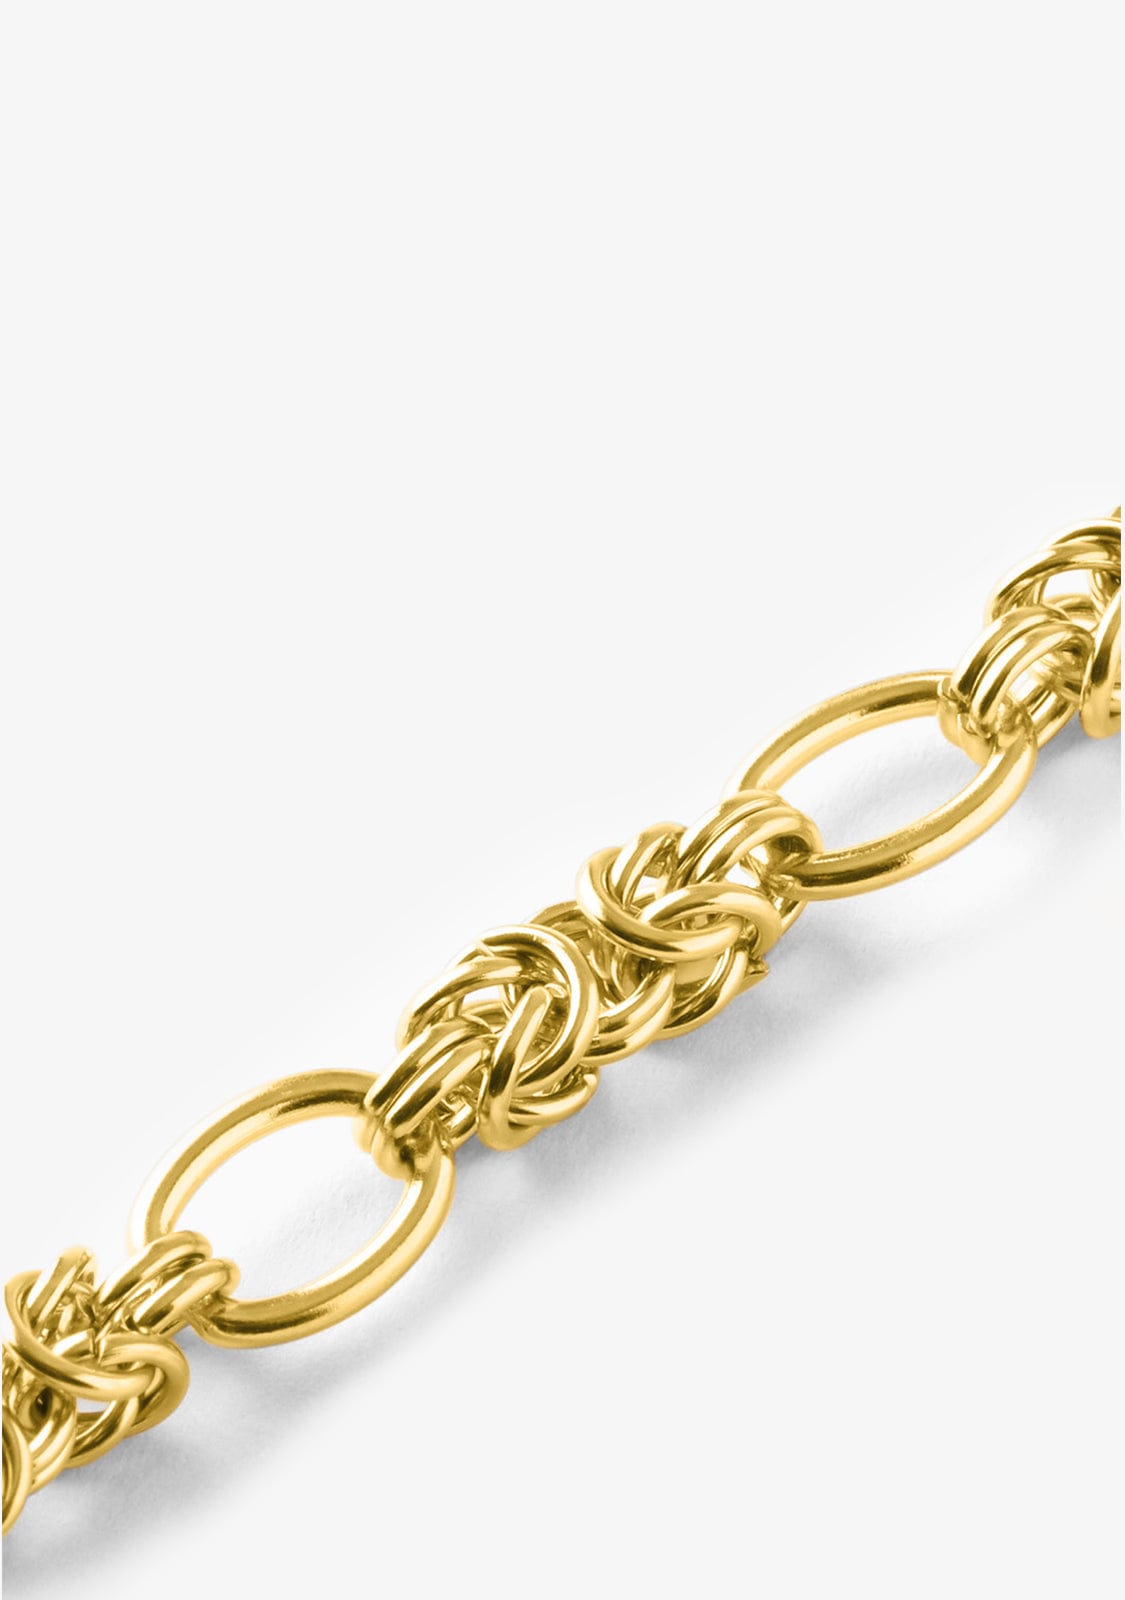 Bracelet Monaco Gold